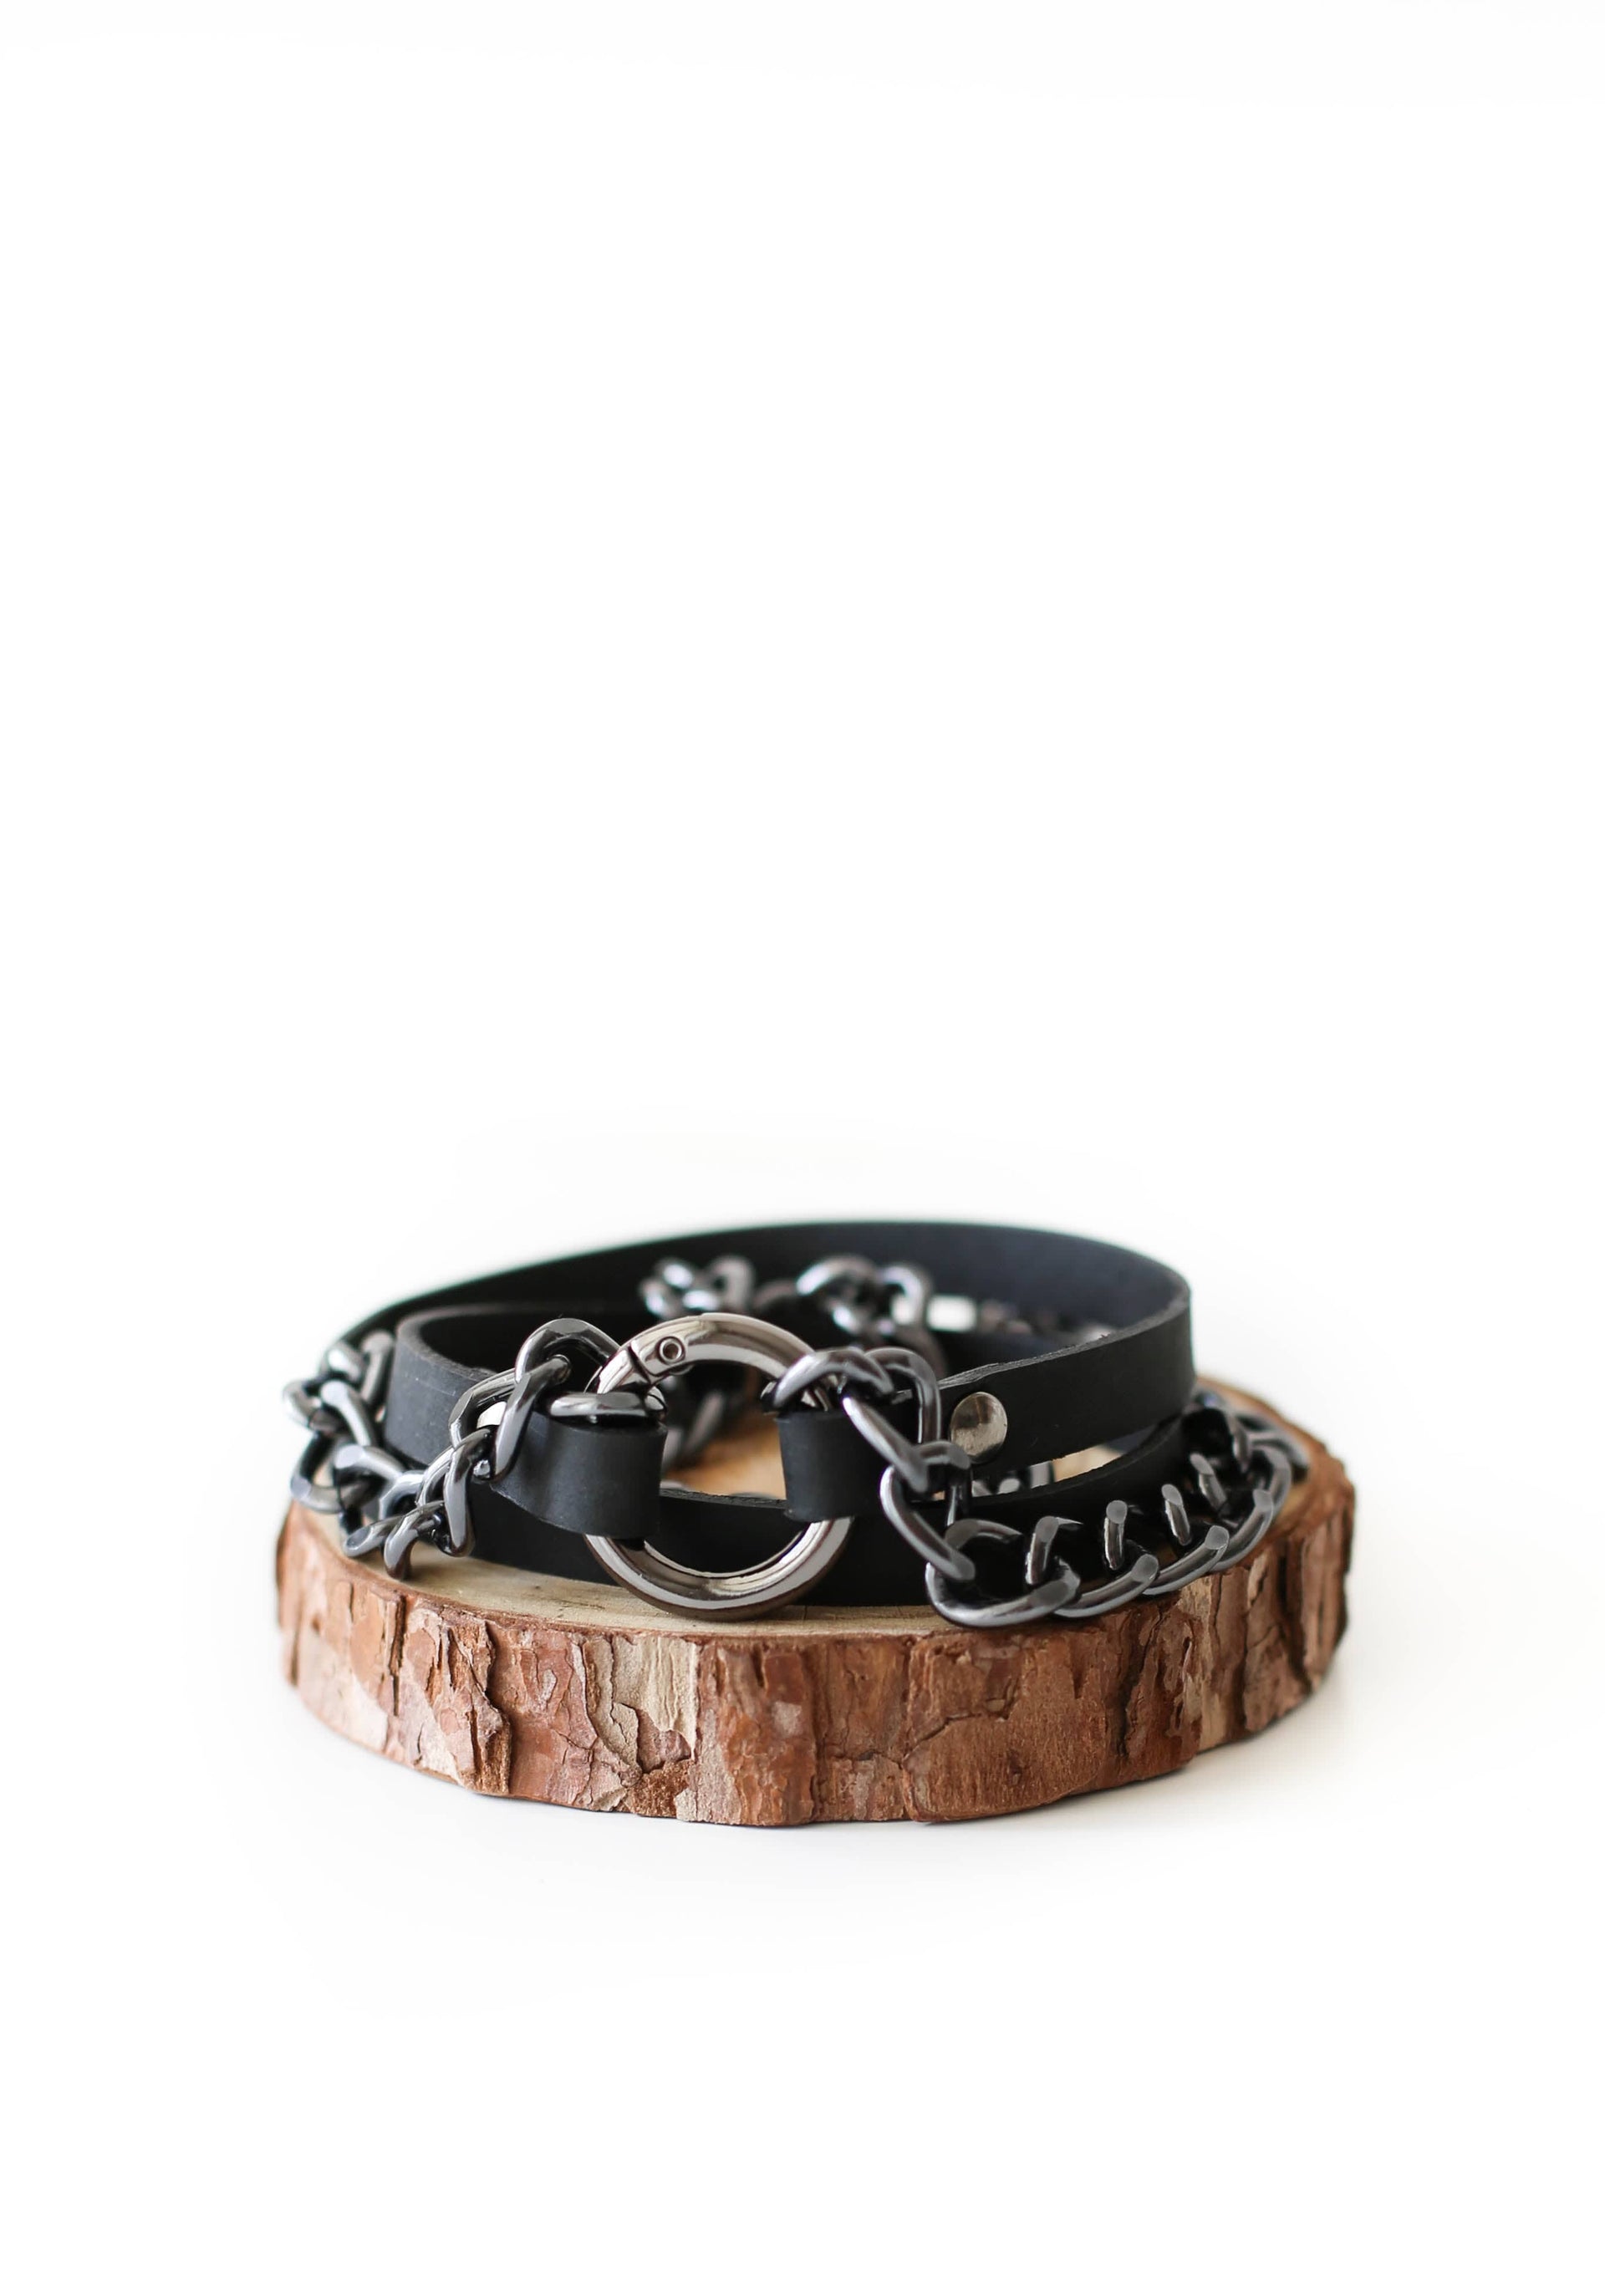 Handmade Leather Bracelet for women